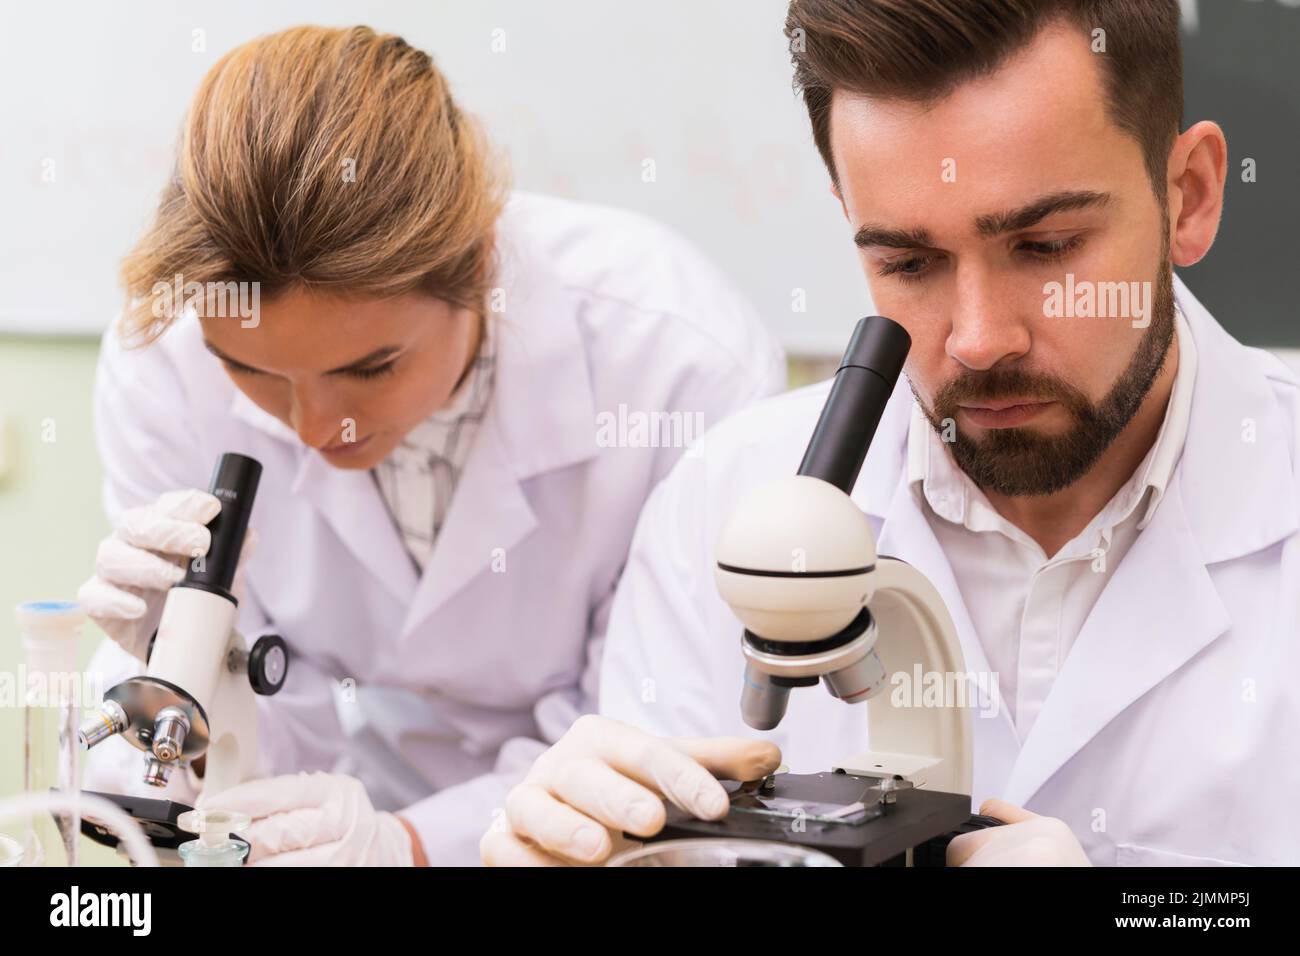 Deux collègues scientifiques utilisent des microscopes au cours de recherches en laboratoire Banque D'Images